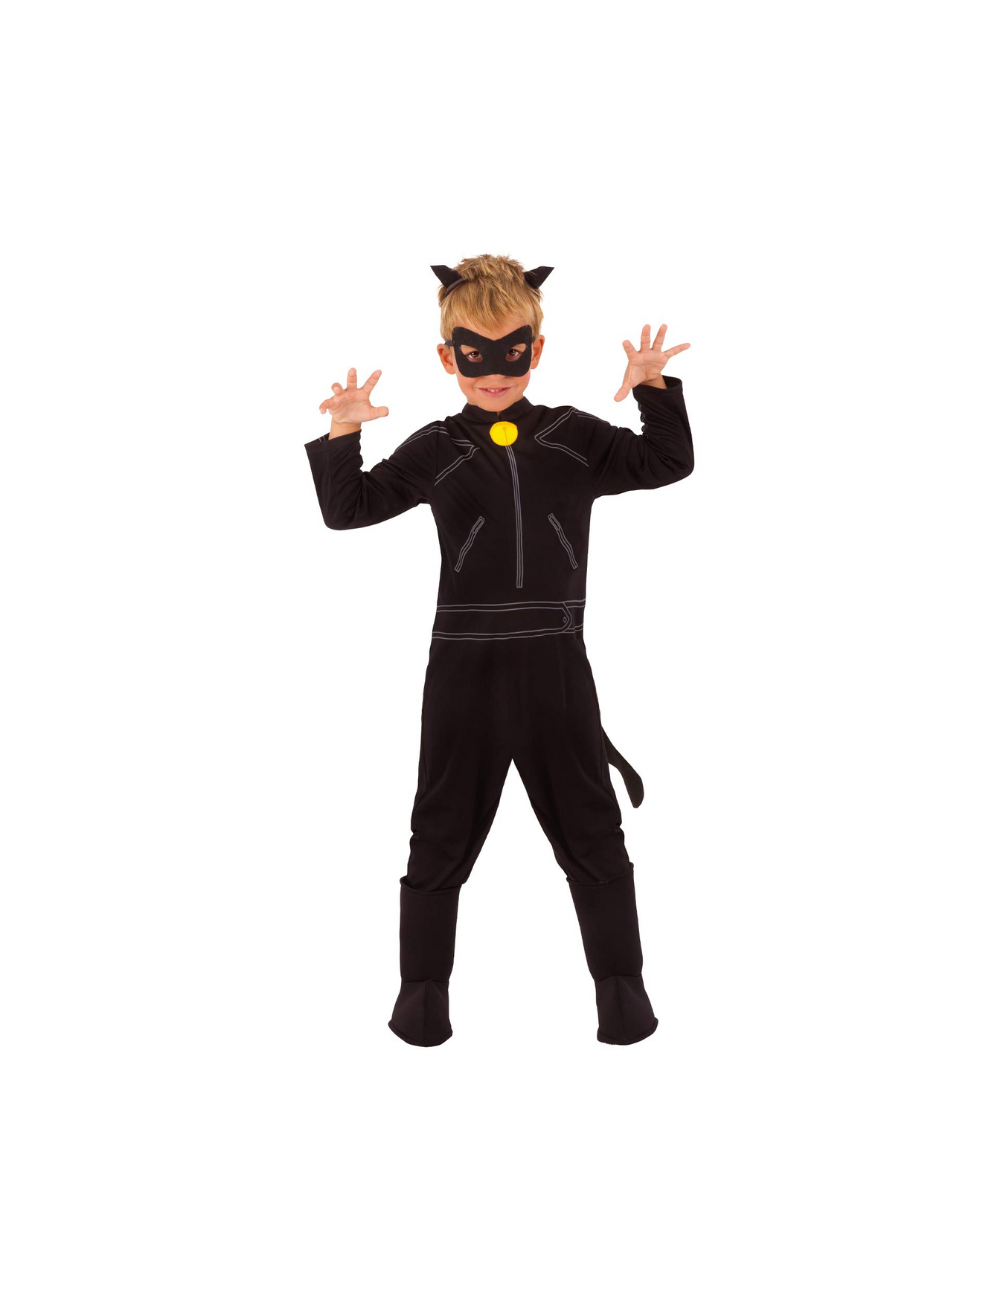 Costume de chat noir Masque de chat noir Mitaines de chat Queue de